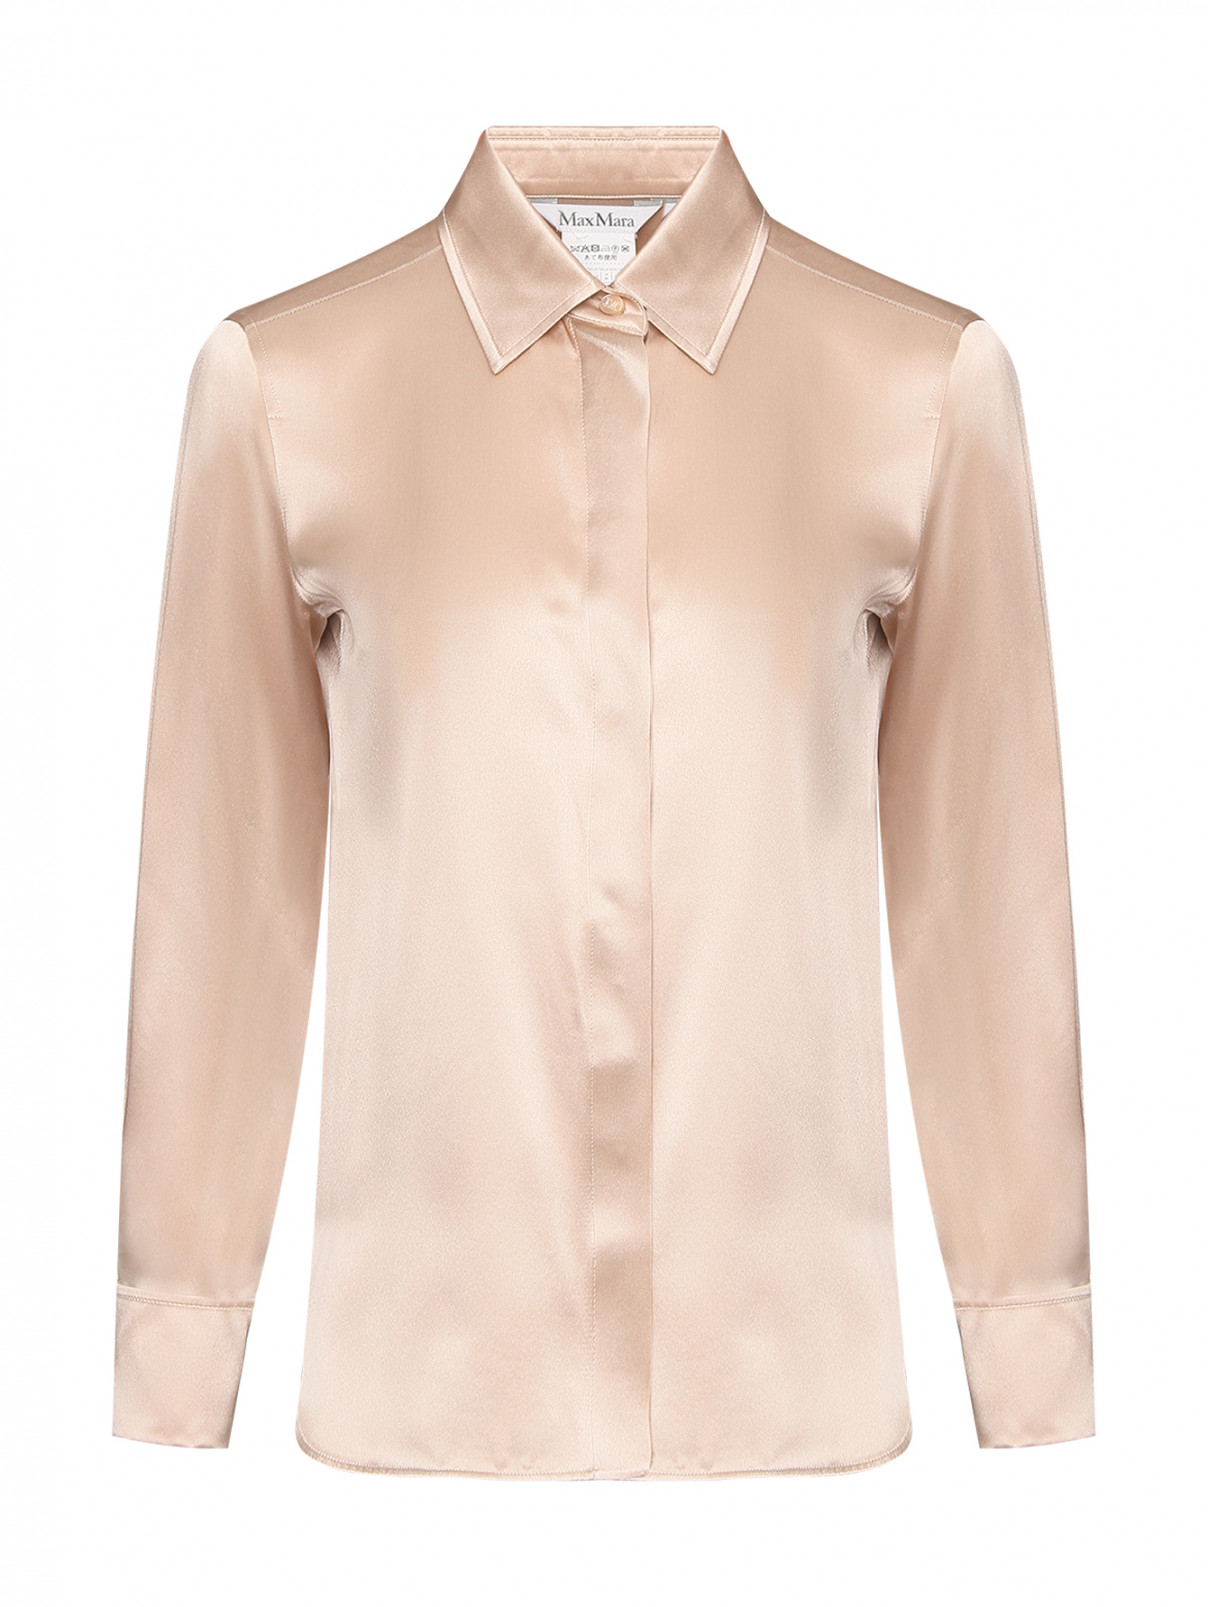 Блуза из шелка на пуговицах Max Mara  –  Общий вид  – Цвет:  Розовый